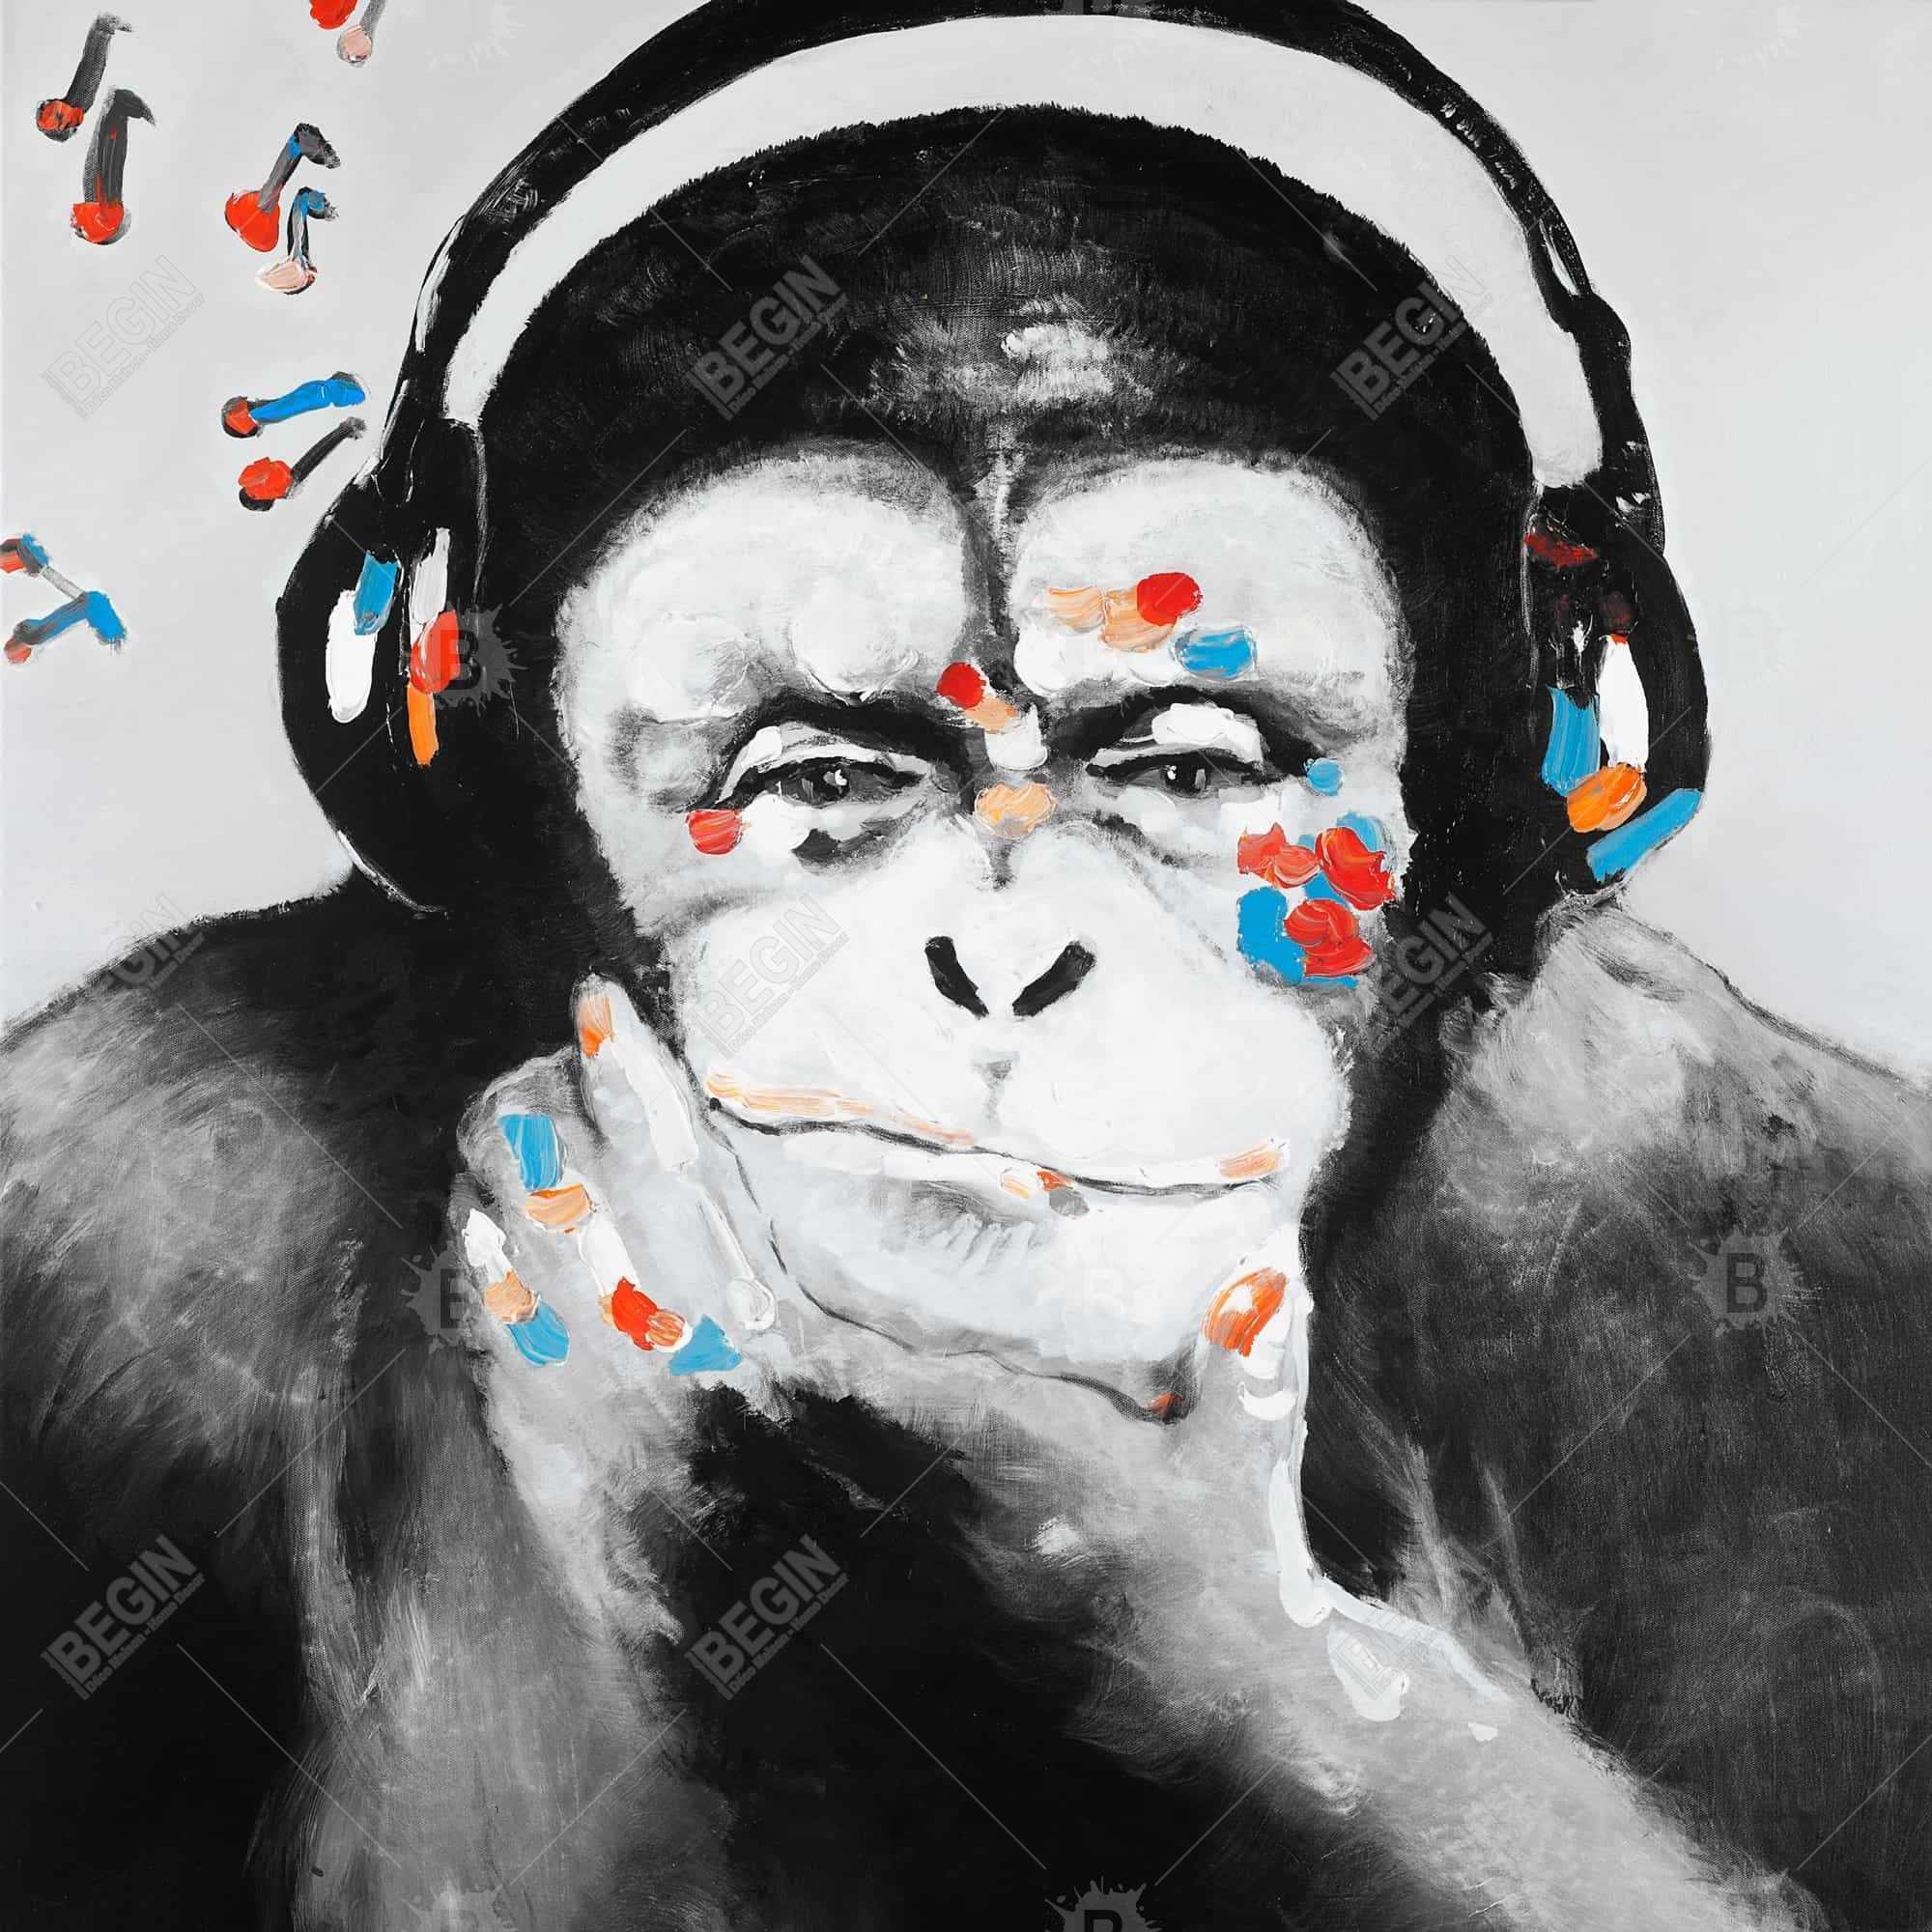 Monkey with headphones